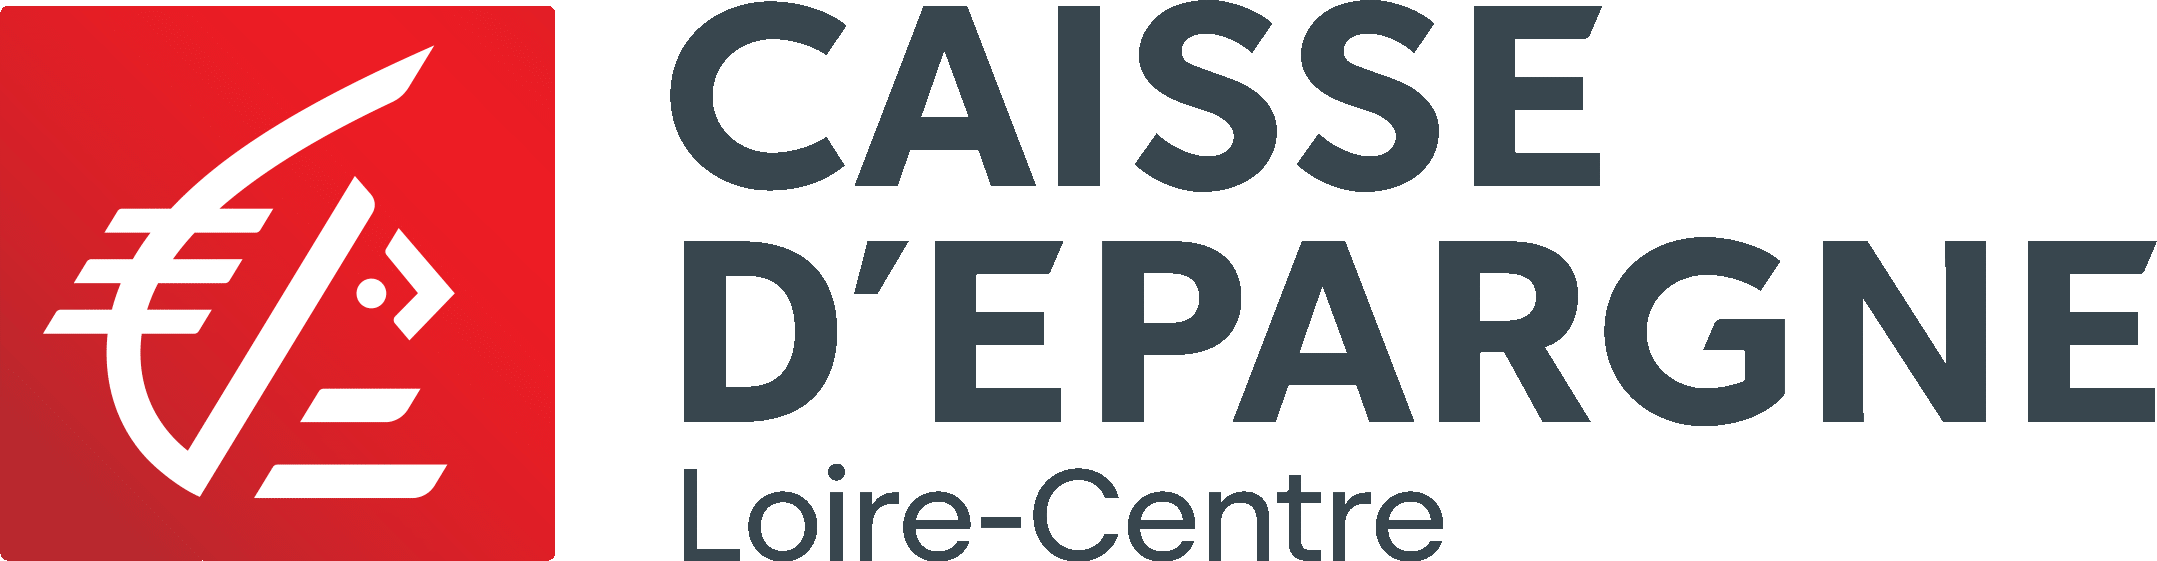 Caisse d'Epargne - Loire & Centre